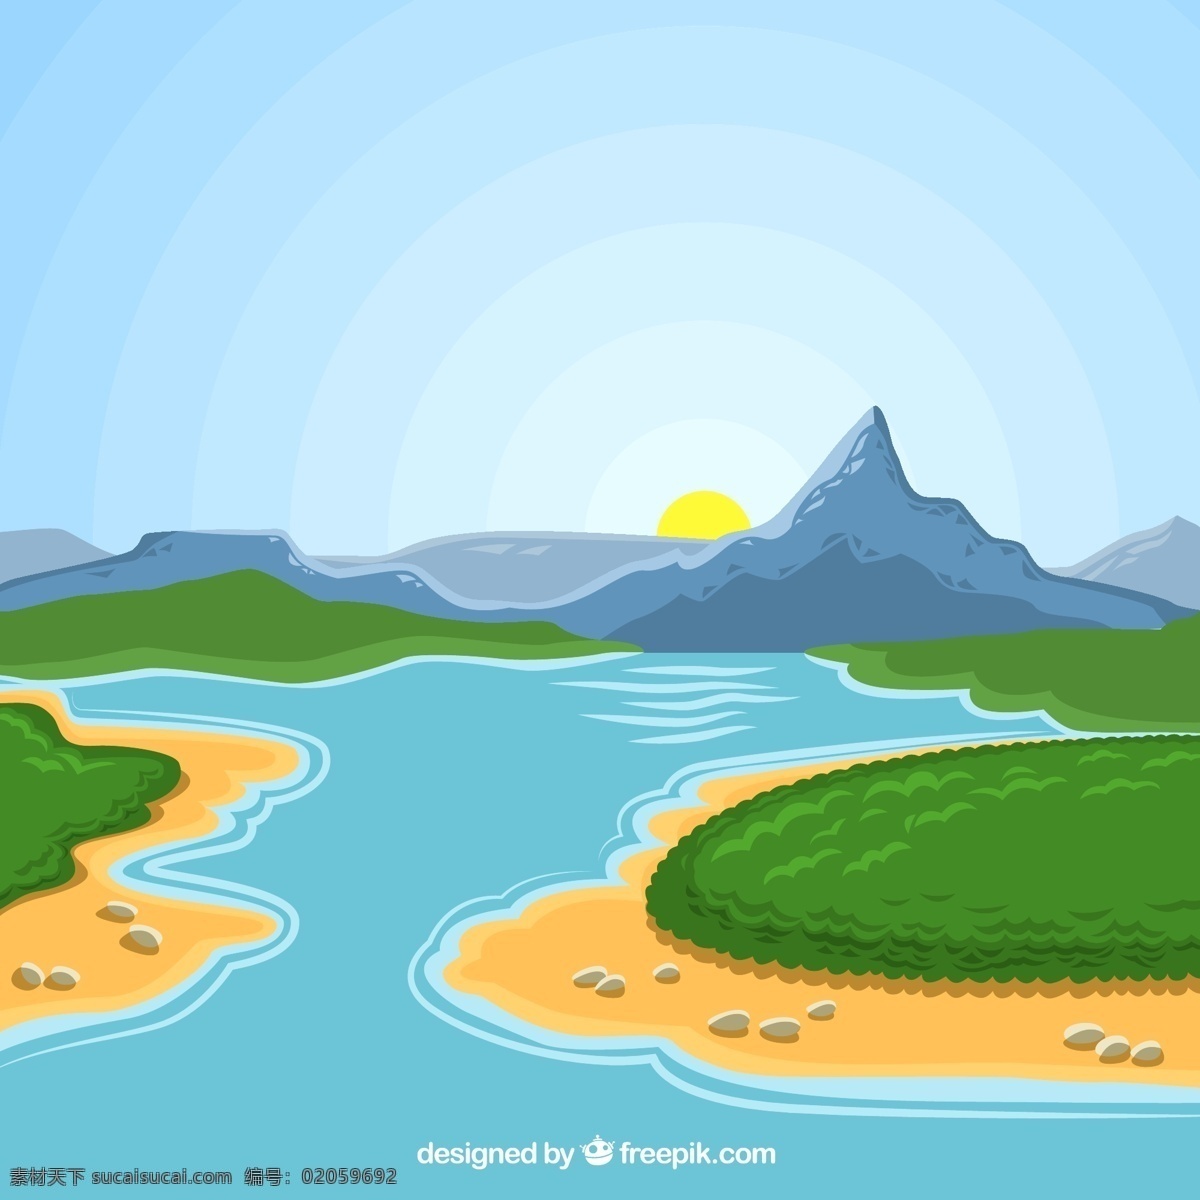 卡通 河谷 风景 矢量 太阳 山 河流 沙滩 植物 矢量图... 青色 天蓝色